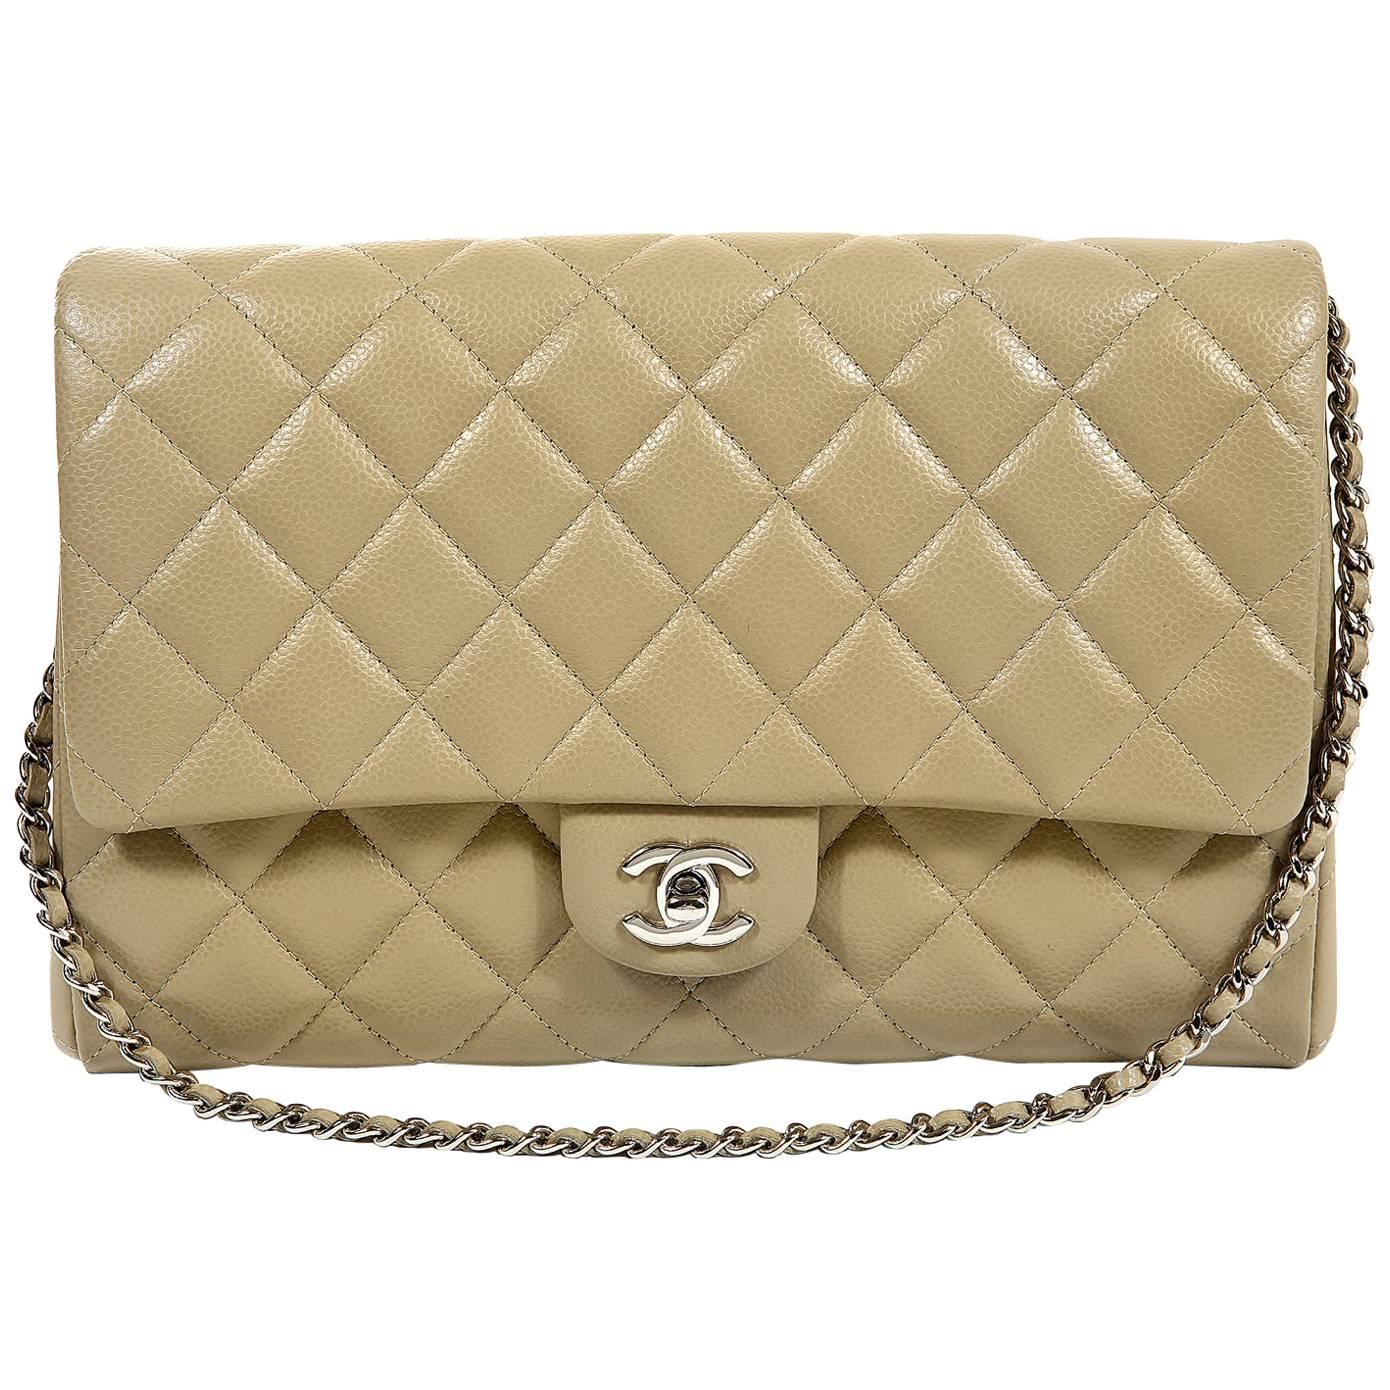 Chanel Etoupe Caviar Classic Clutch Shoulder Bag